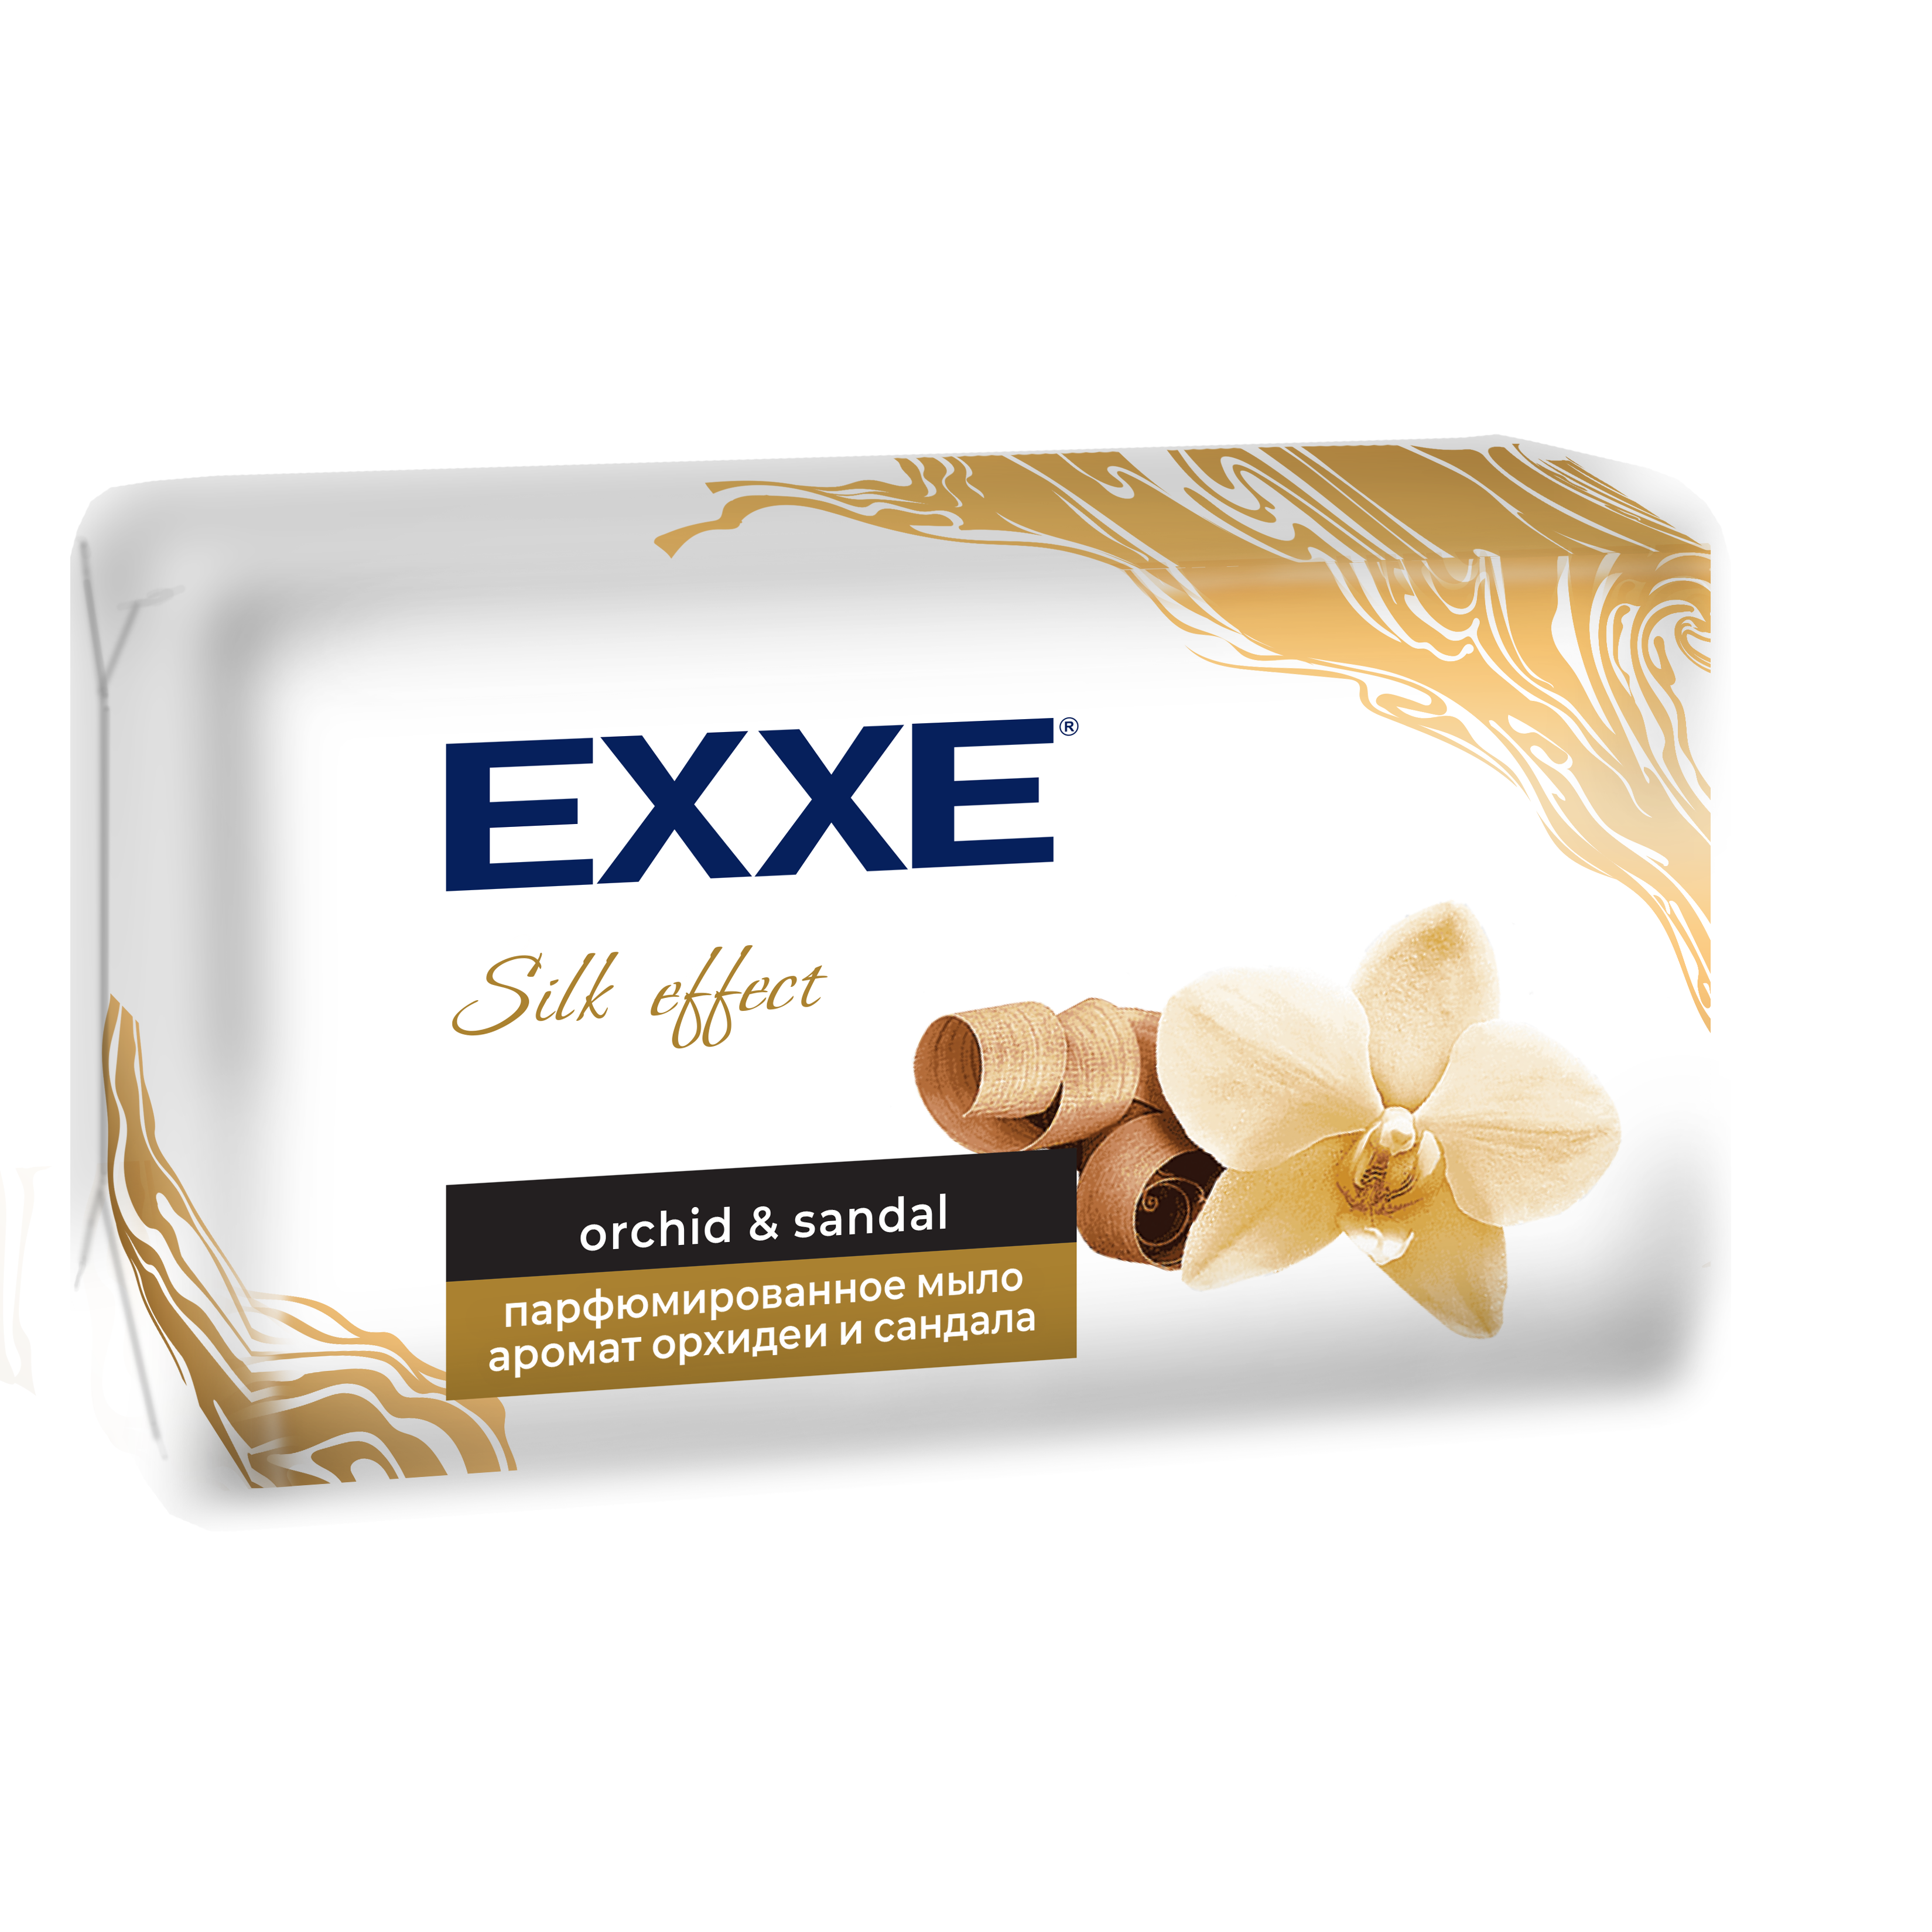 Мыло парфюмированное EXXE Silk Effect аромат Орхидеи и Сандала, 140 г dalan парфюмированное мыло для рук и тела botanica аромат пион 600 0